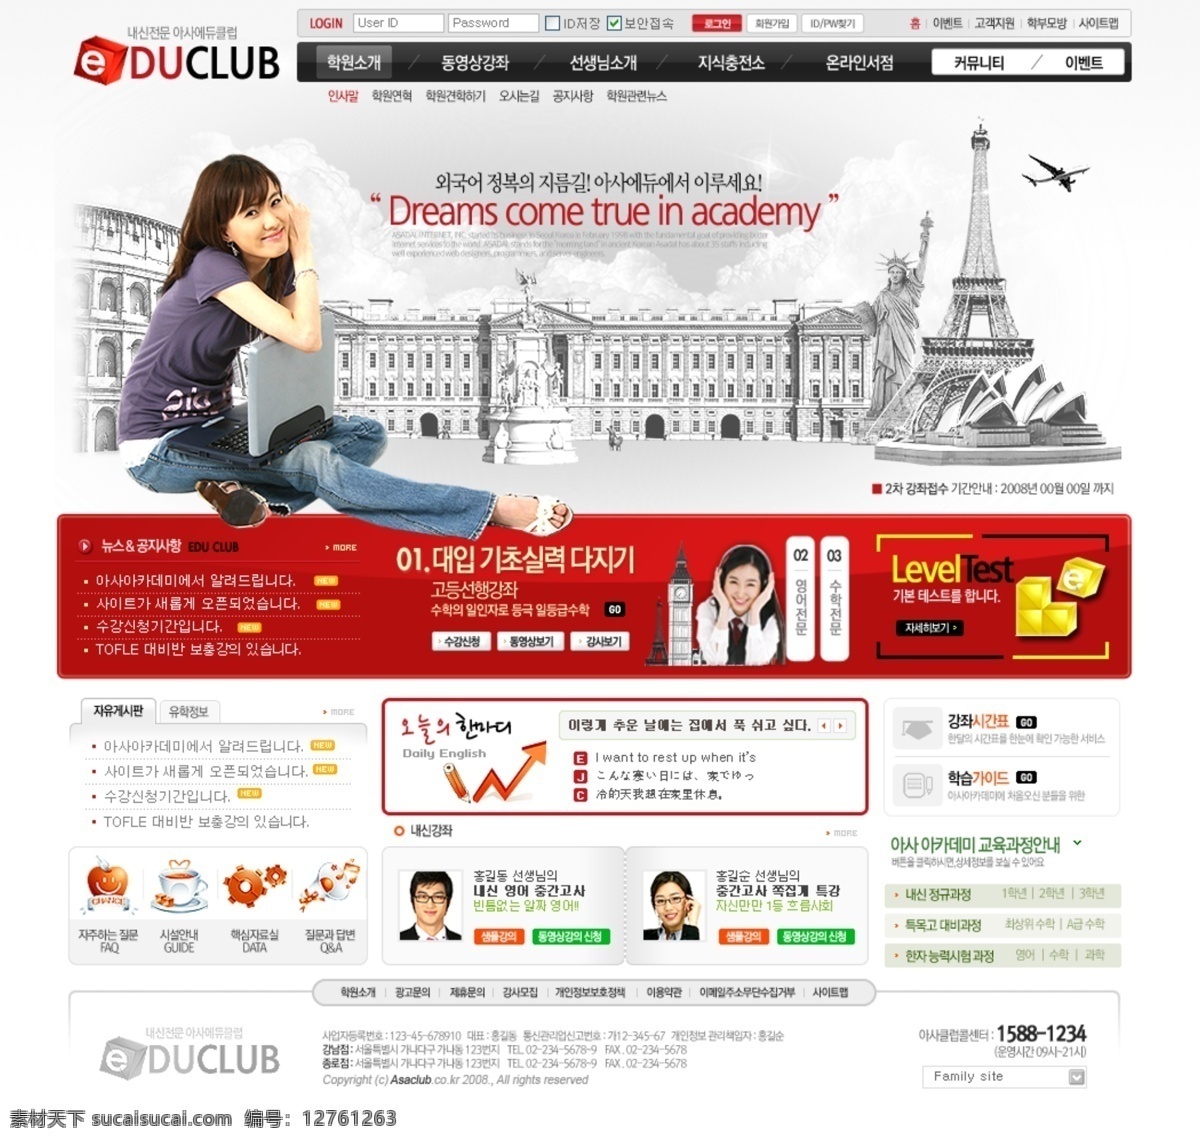 教育培训 信息 交互 网页模板 韩国风格 教育 培训 交互网页 红色色调 网页素材